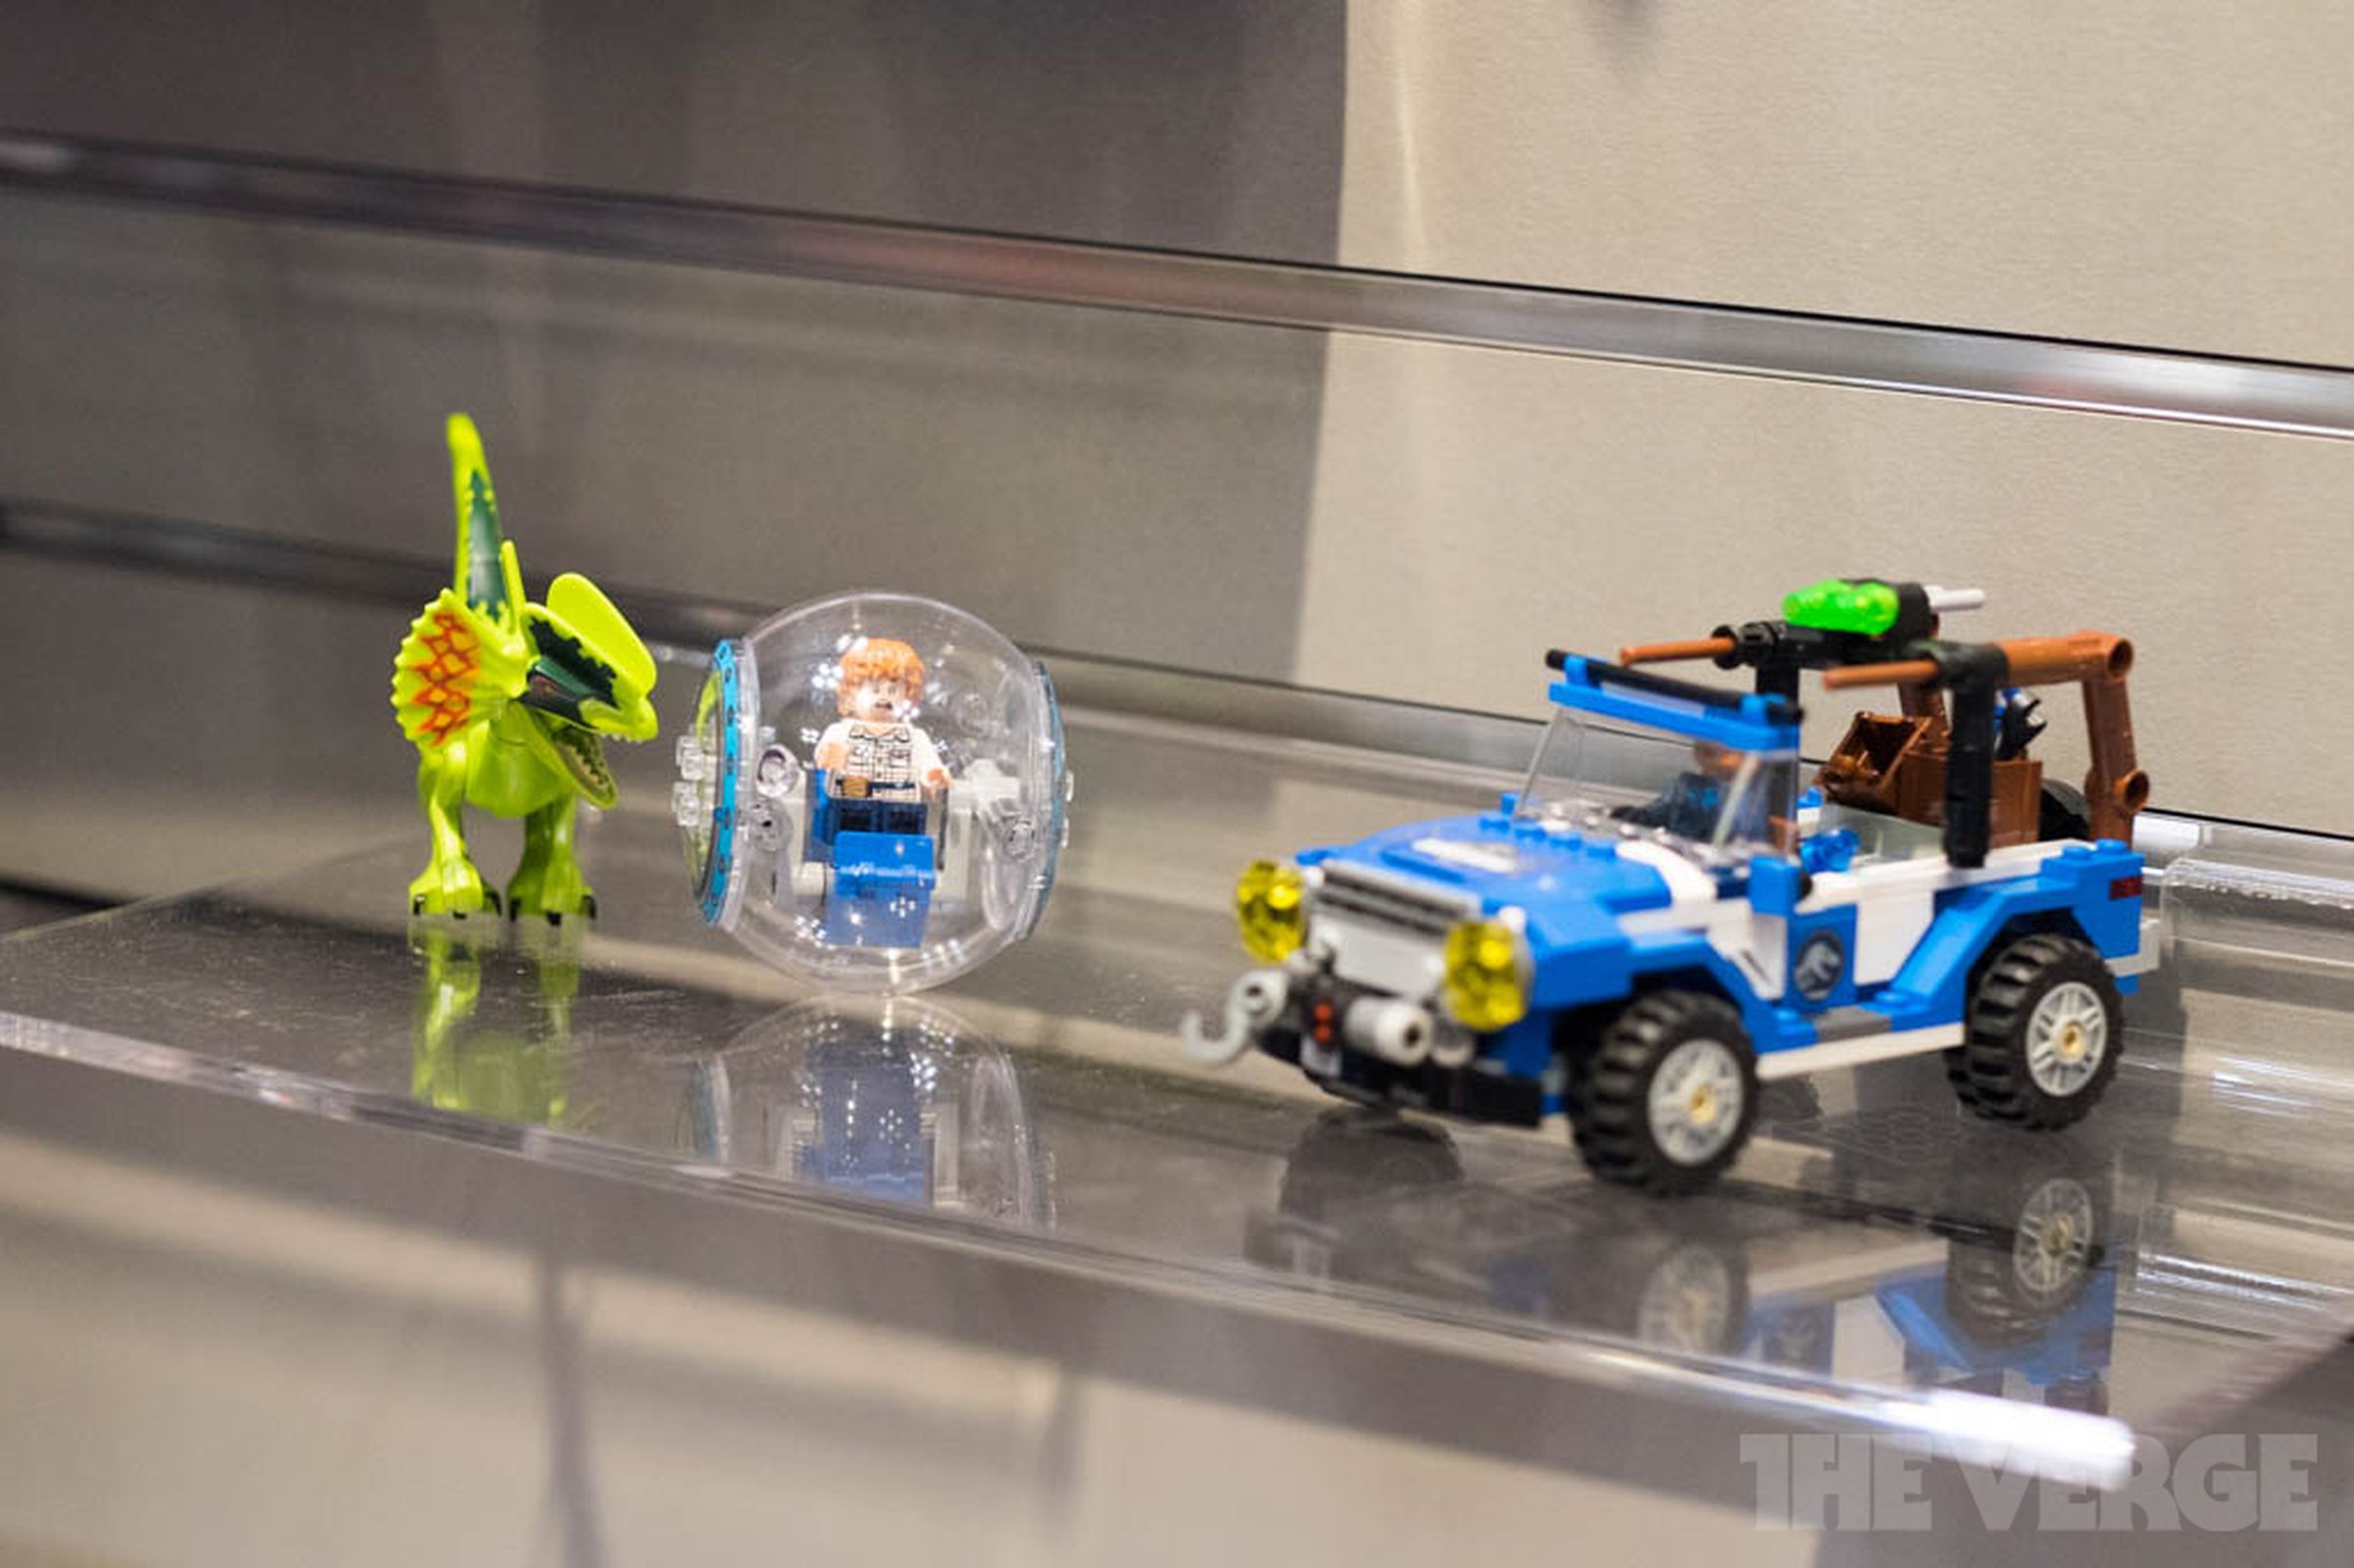 Lego at Toy Fair 2015